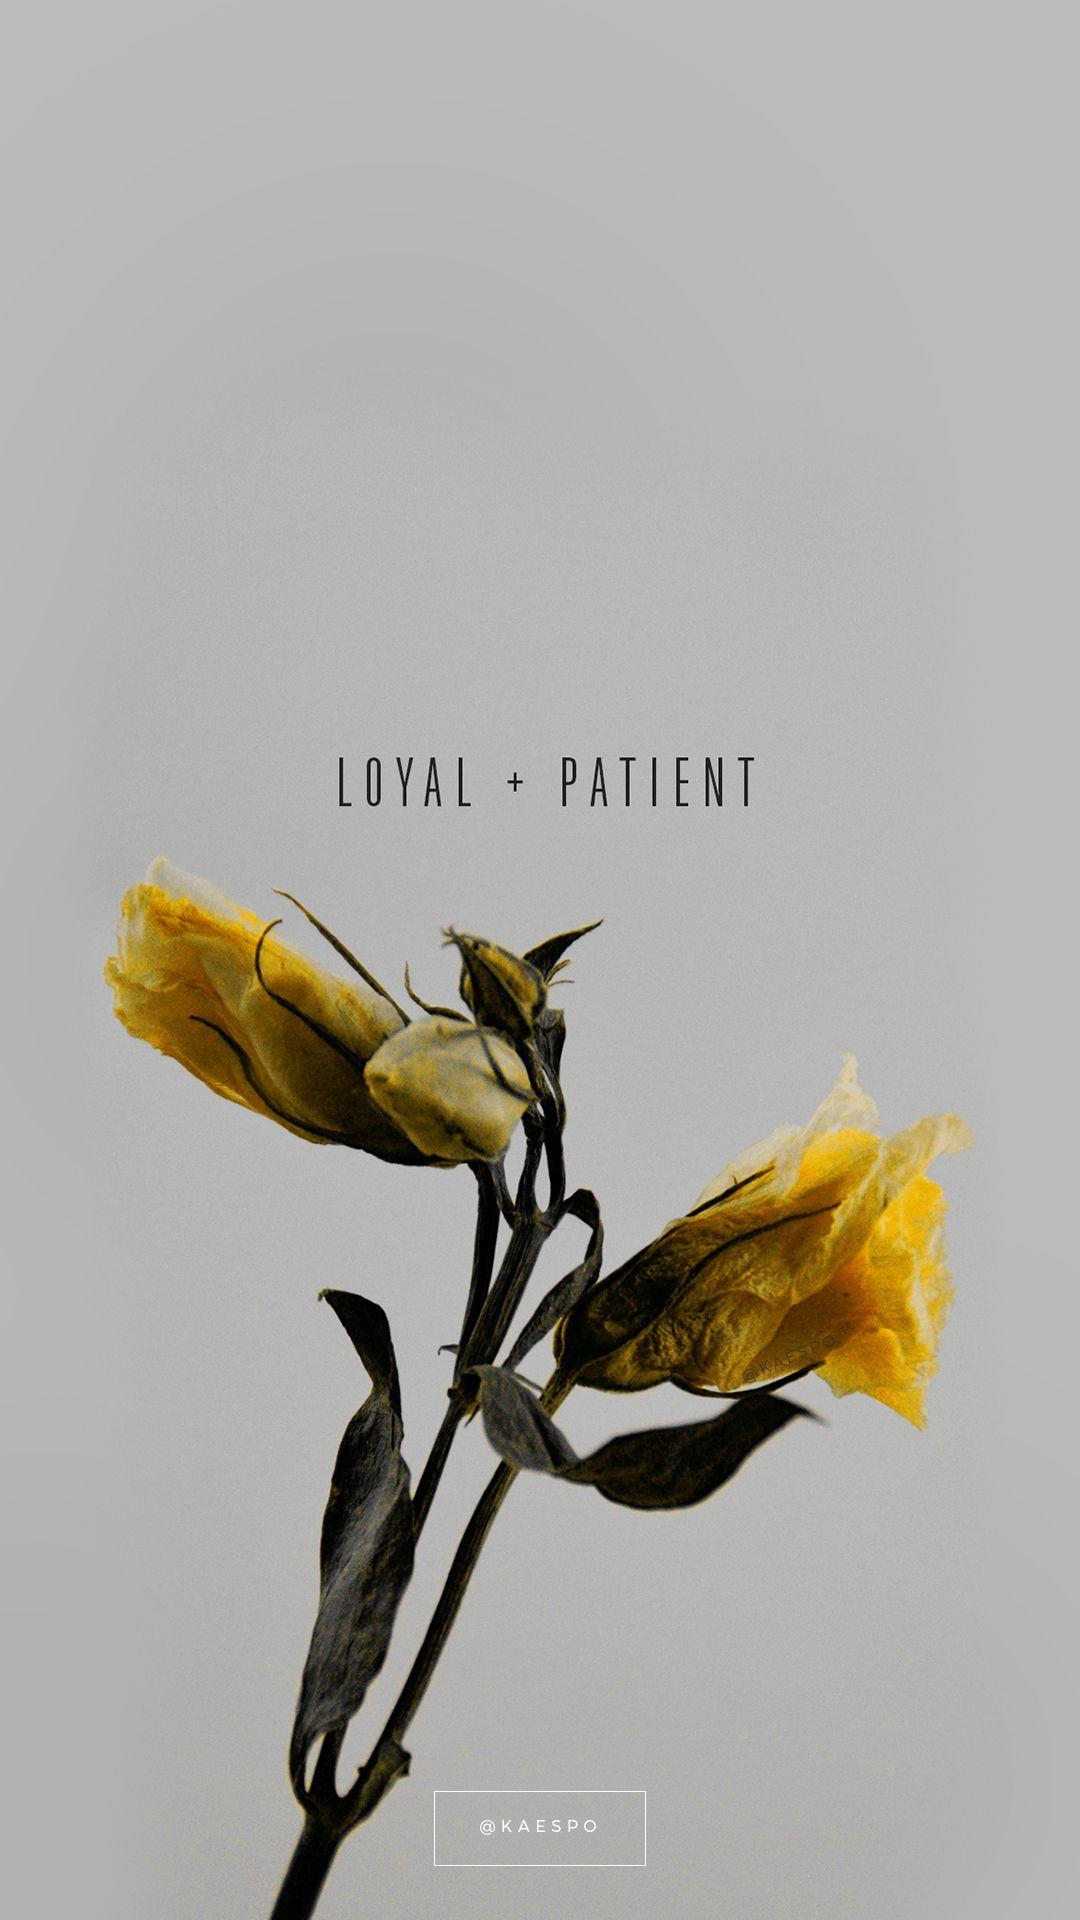 1080x1920 Trích dẫn về lòng trung thành và bệnh nhân trên nền hoa màu vàng